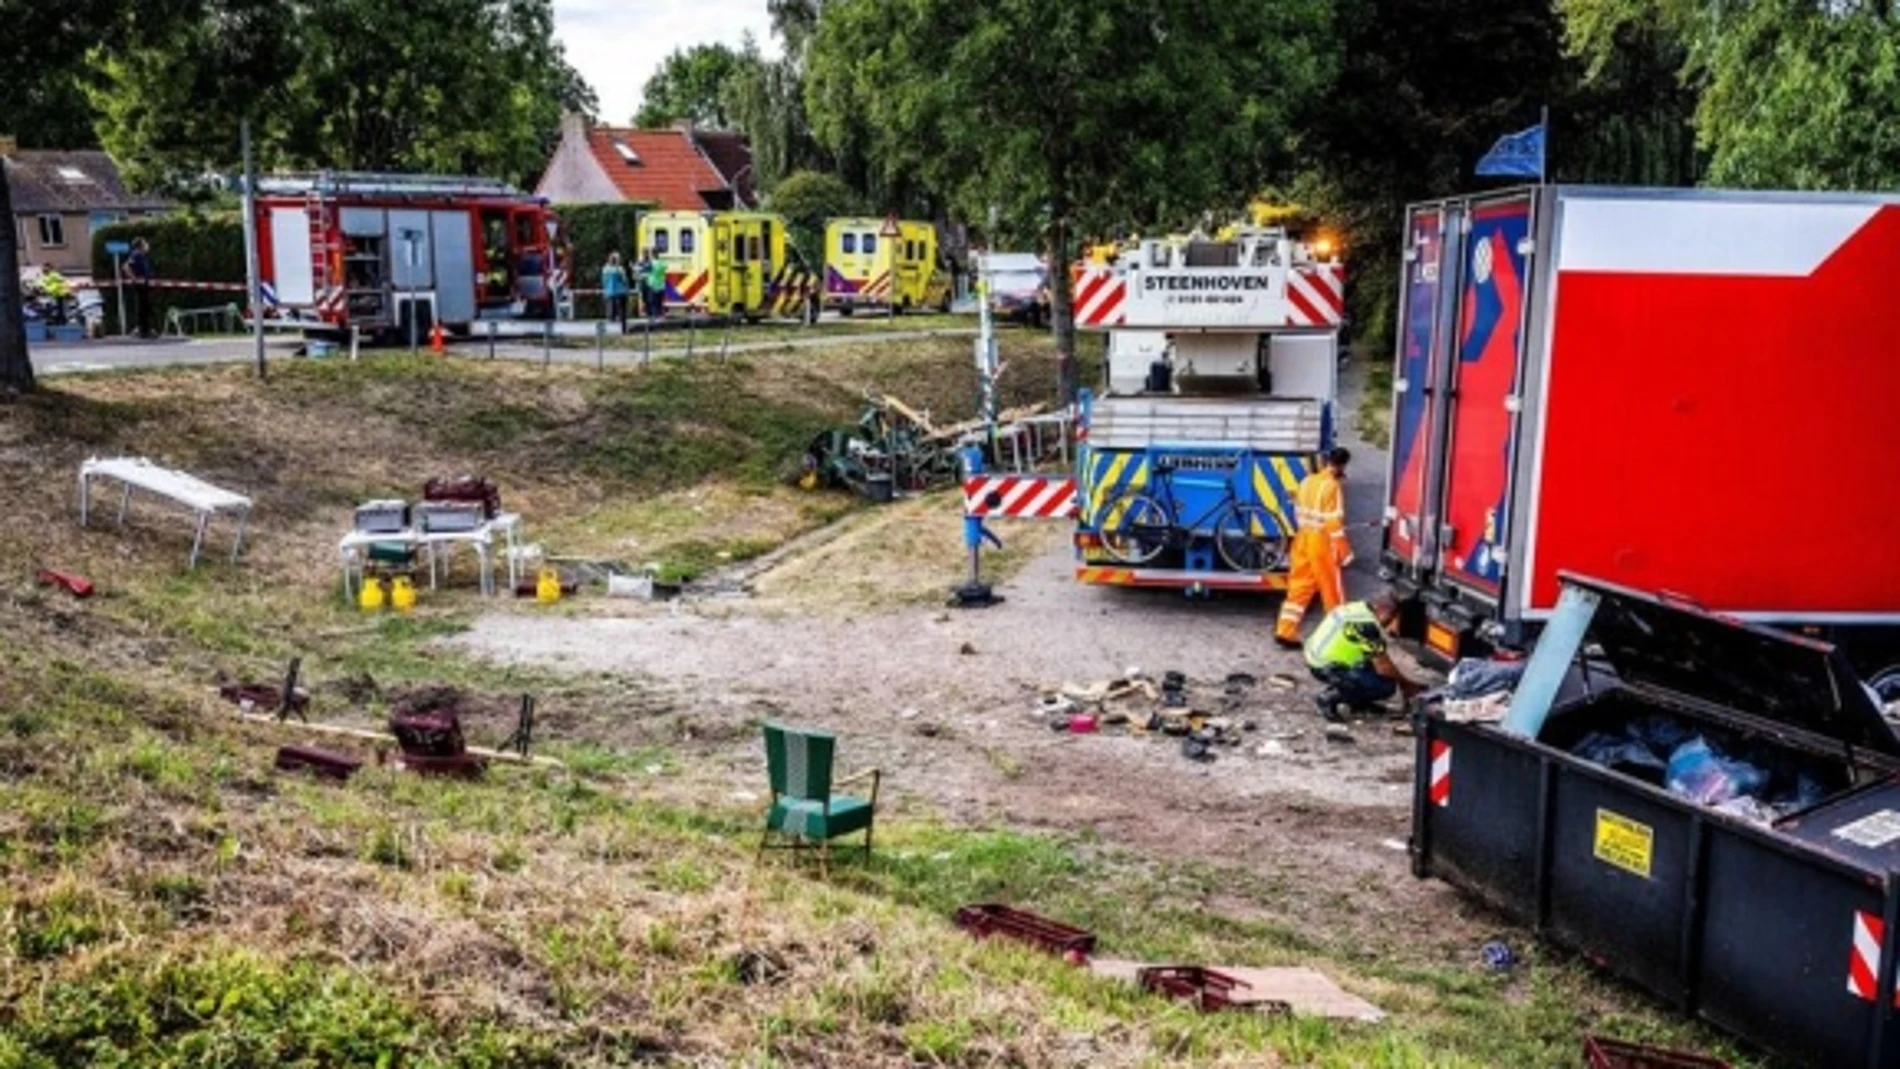 Zona del atropello atribuido a un camionero español en Nieuw-Beijerland